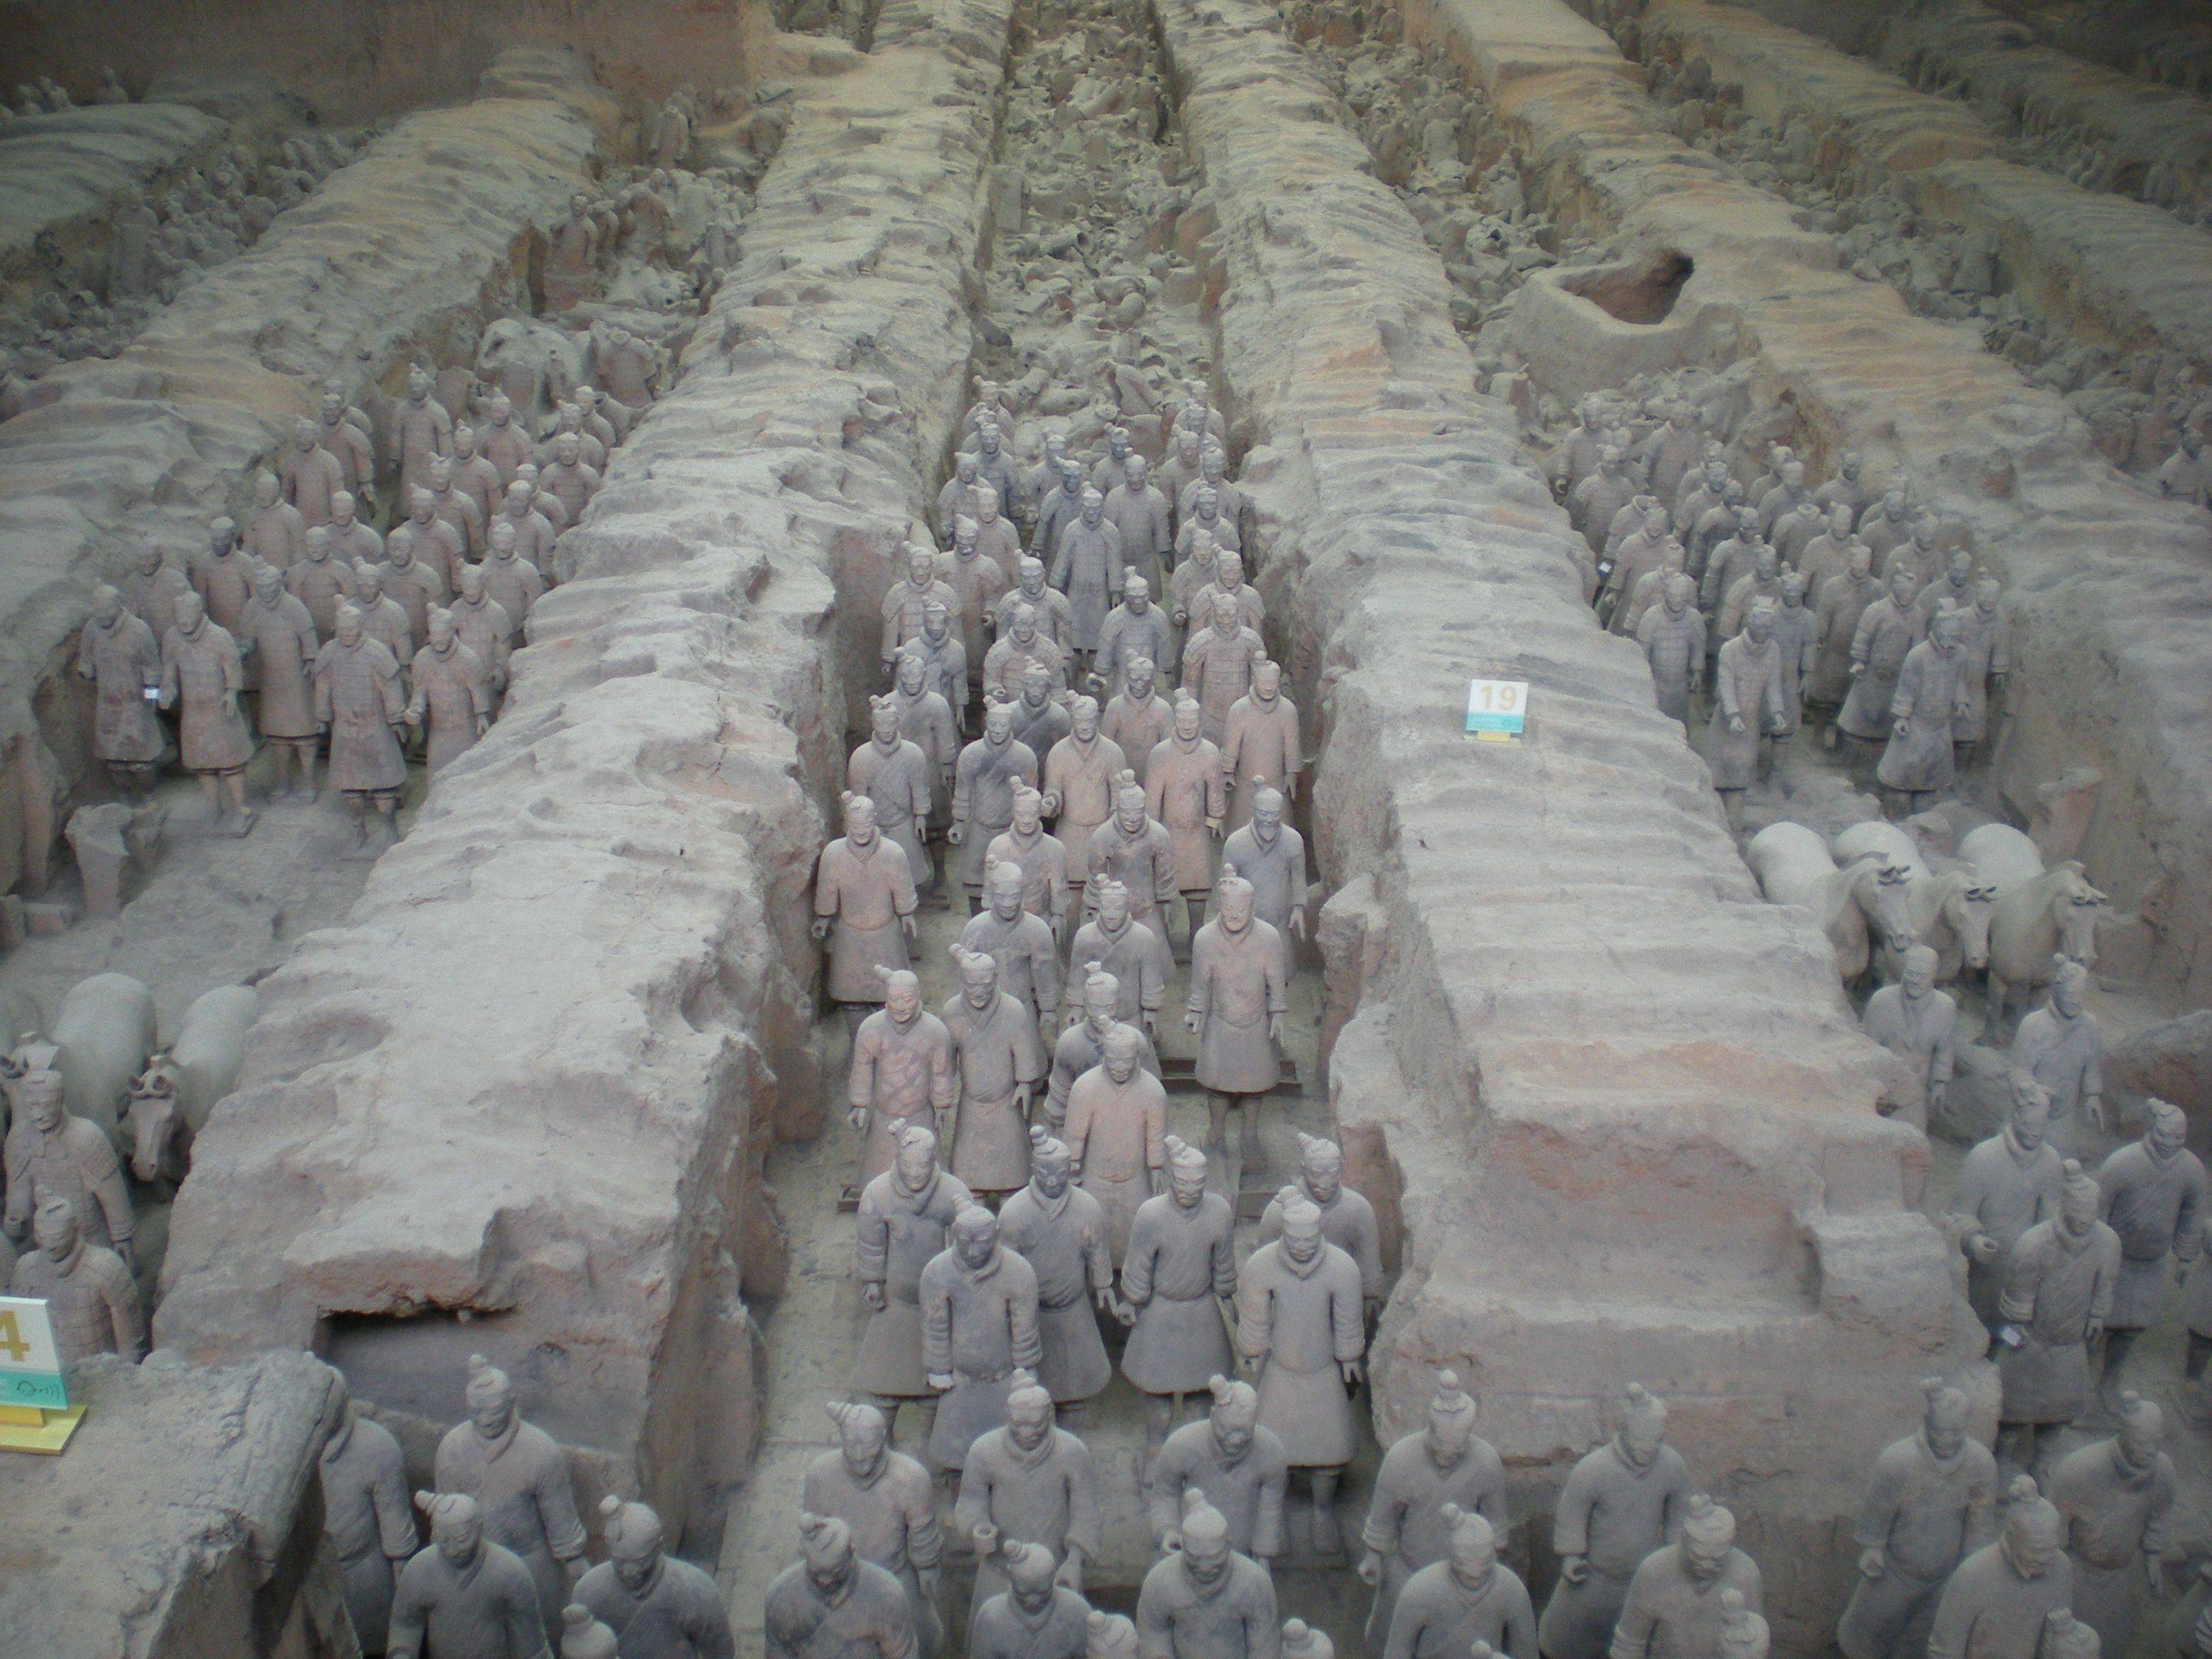 Visita all'esercito di terracotta a Xian